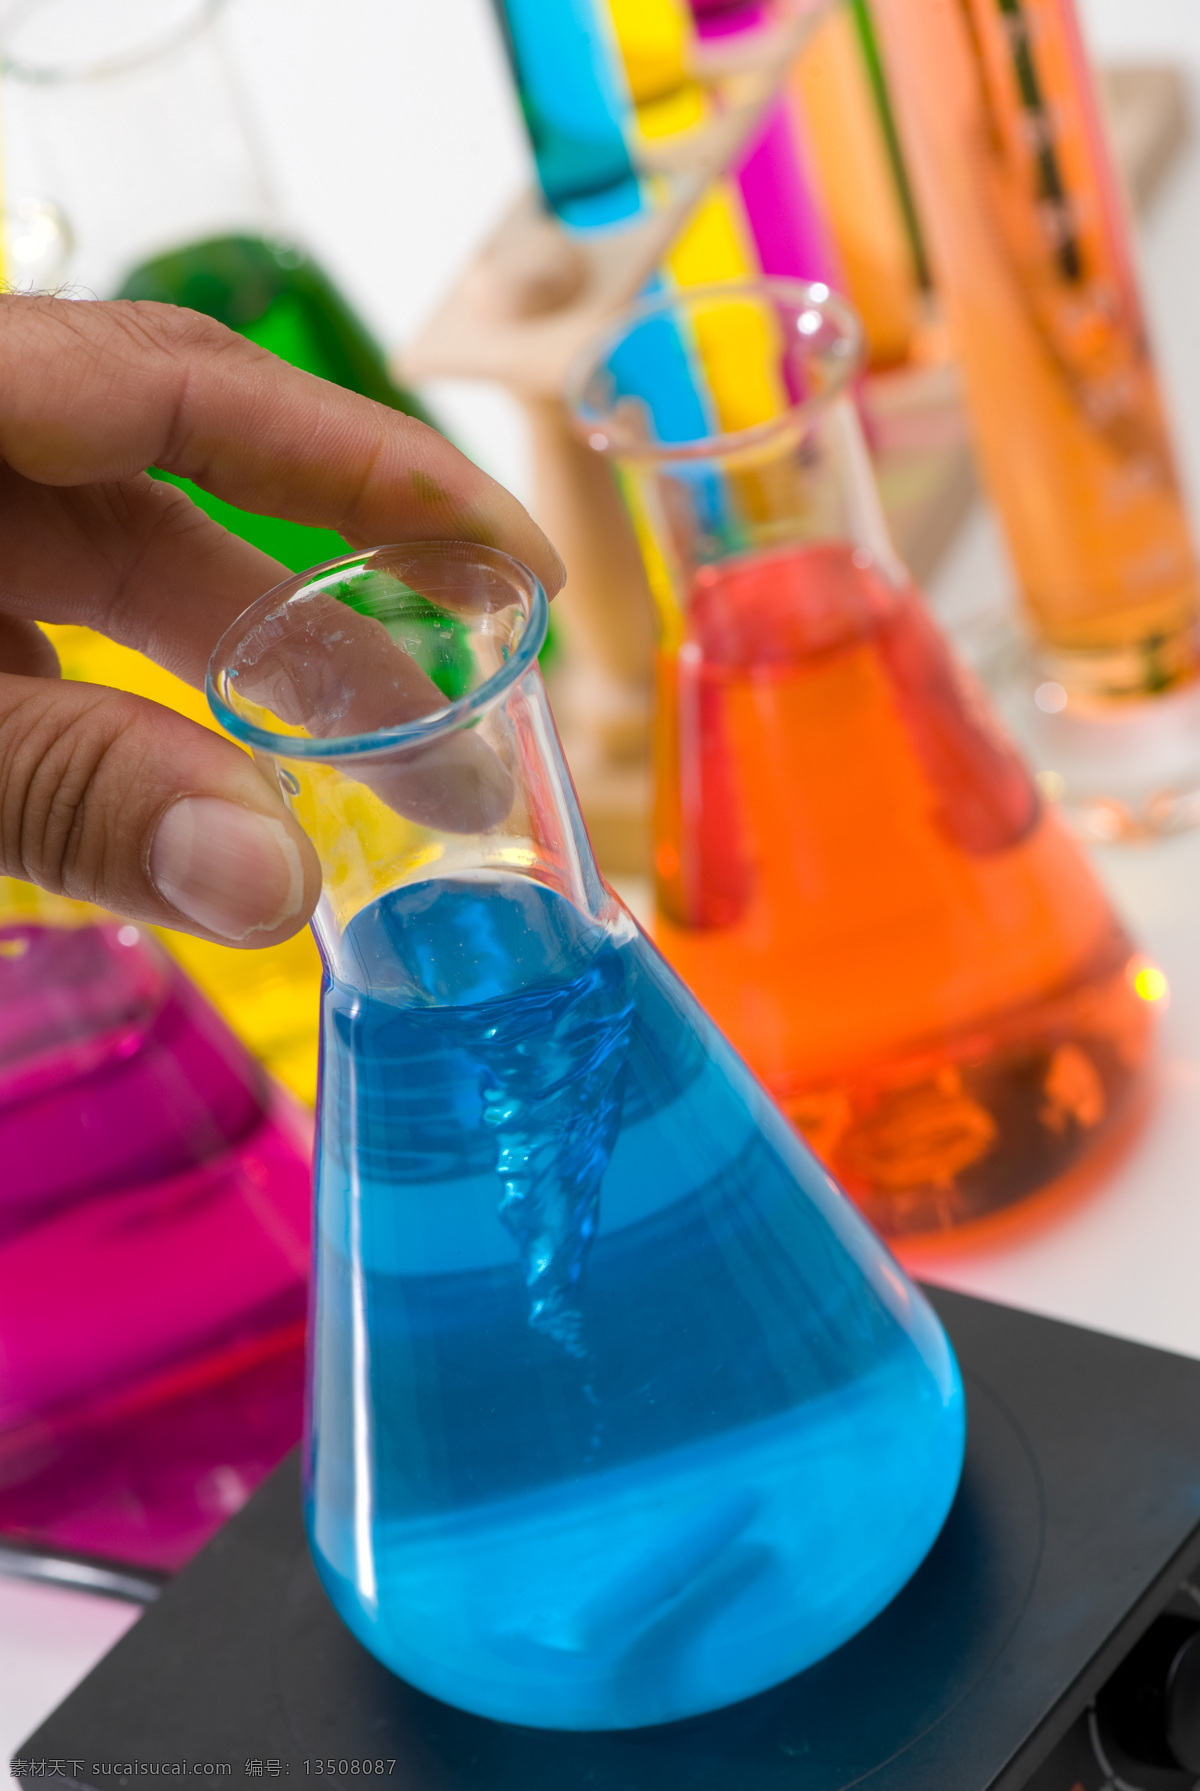 烧杯 里 蓝色 液体 试管 试剂 量杯 试验器皿 彩色液体 化学素材 化学试验 科学研究 生物科技 科技图片 现代科技